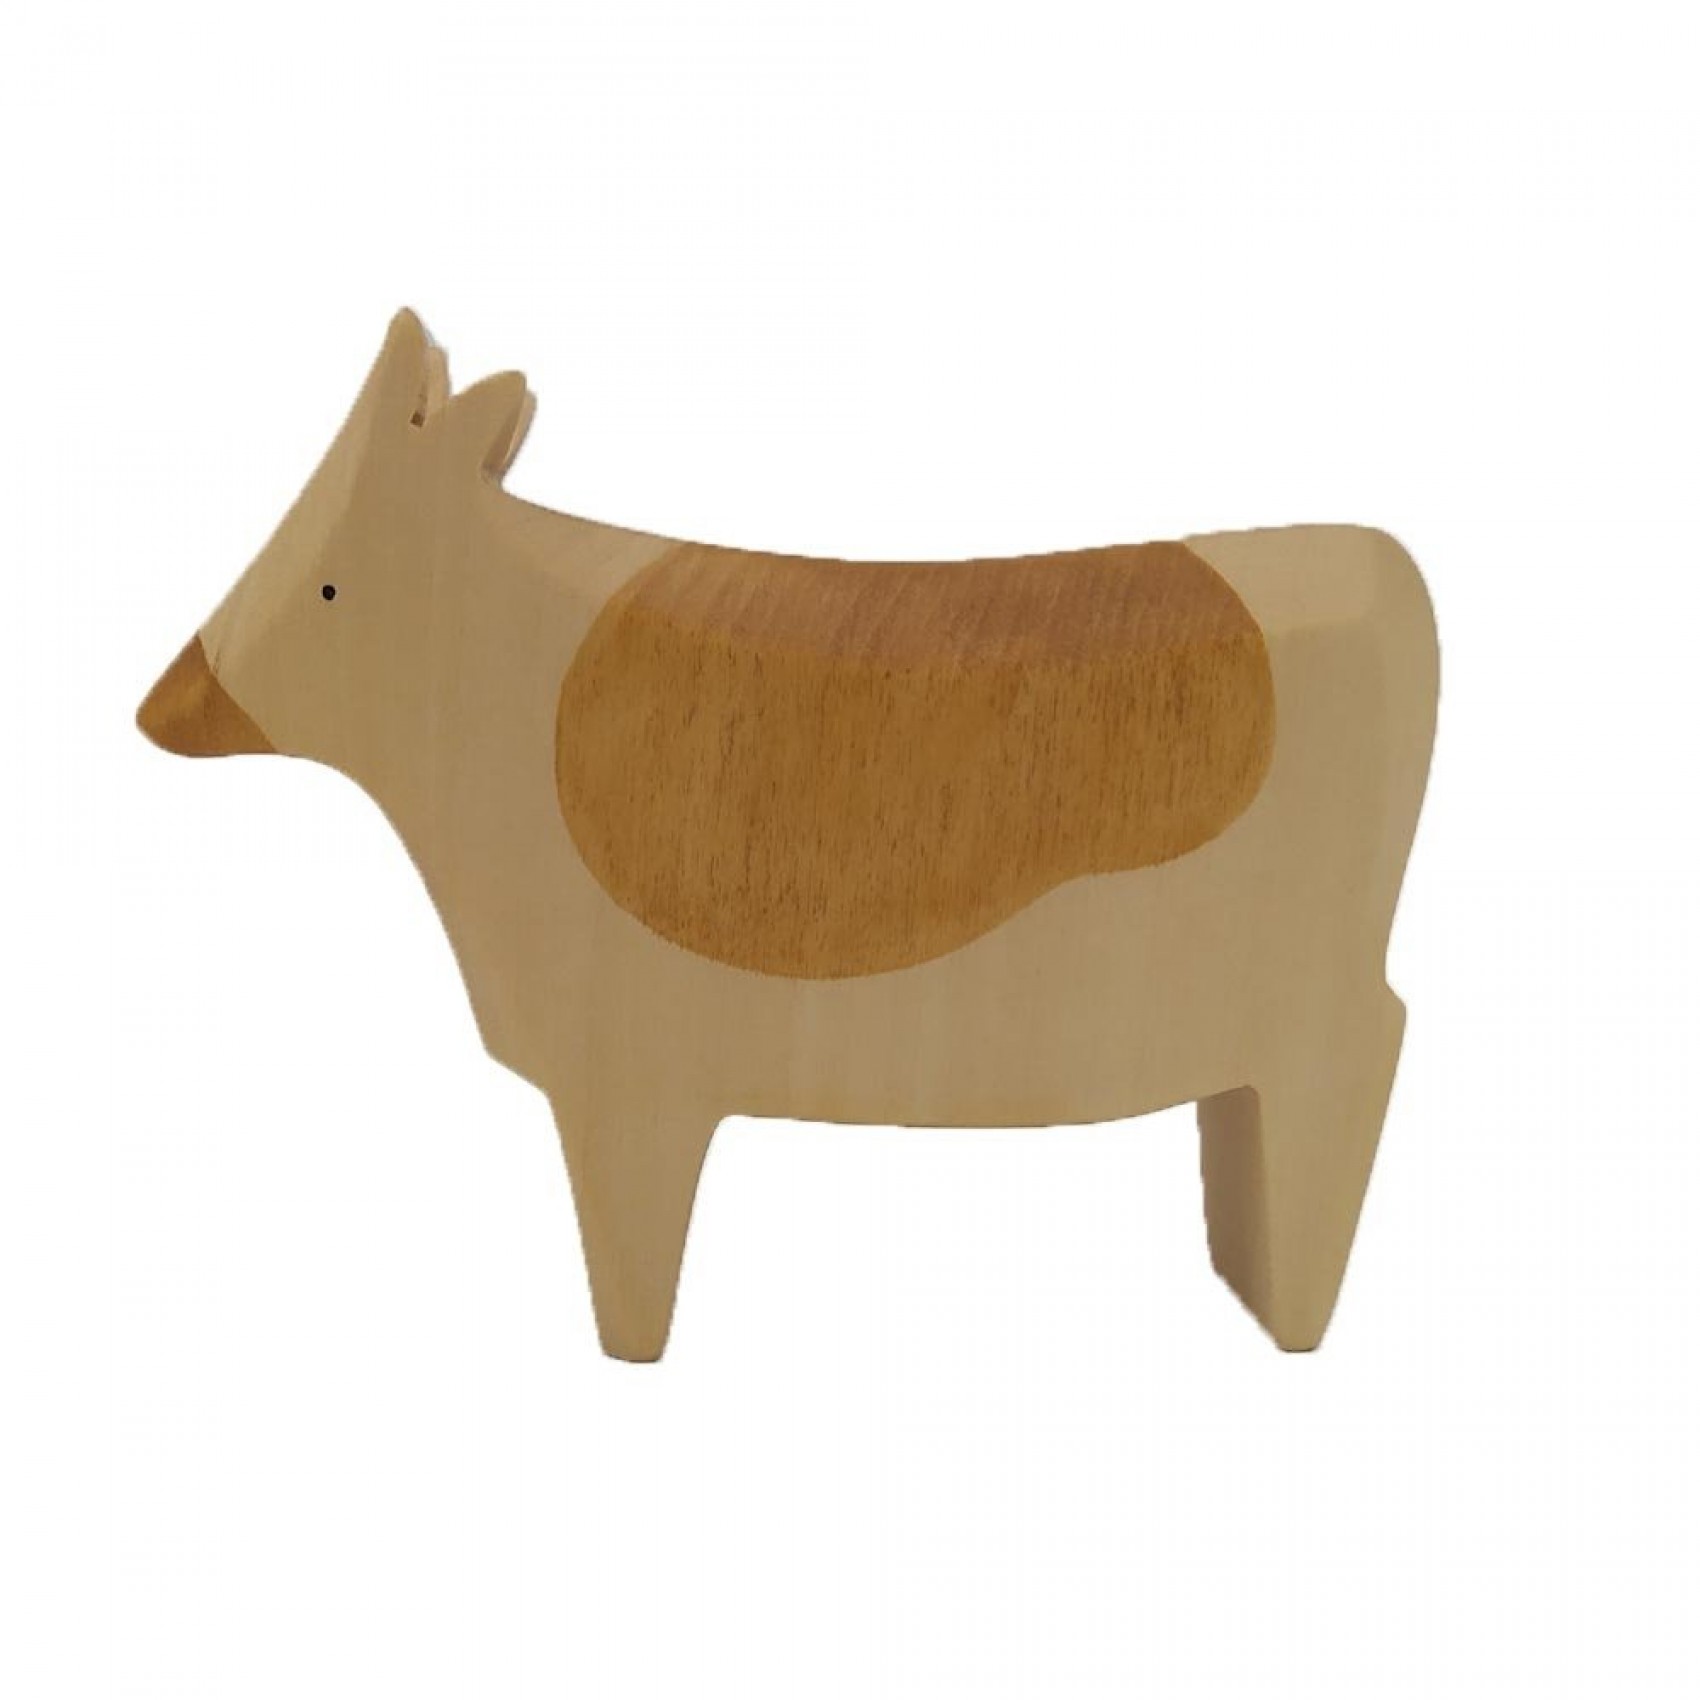 Jouet vache en bois Figurine vache en bois Animaux de la ferme en bois  Jouets animaux en bois Animaux en bois -  France